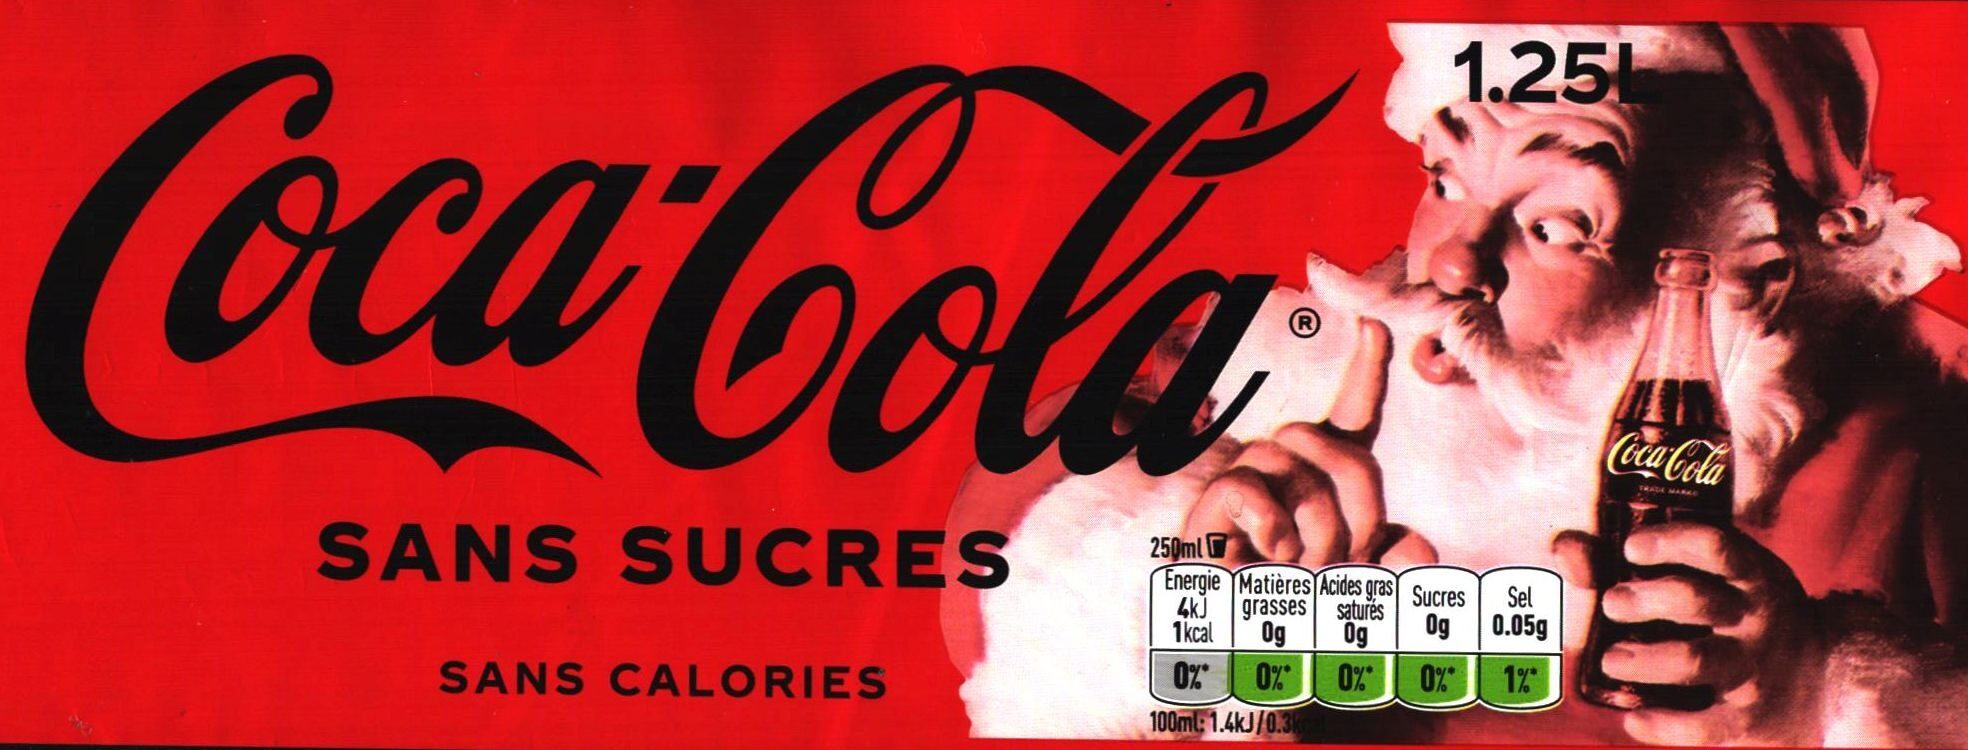 Coca-Cola® Sans sucres Sans colorants - Produkt - fr